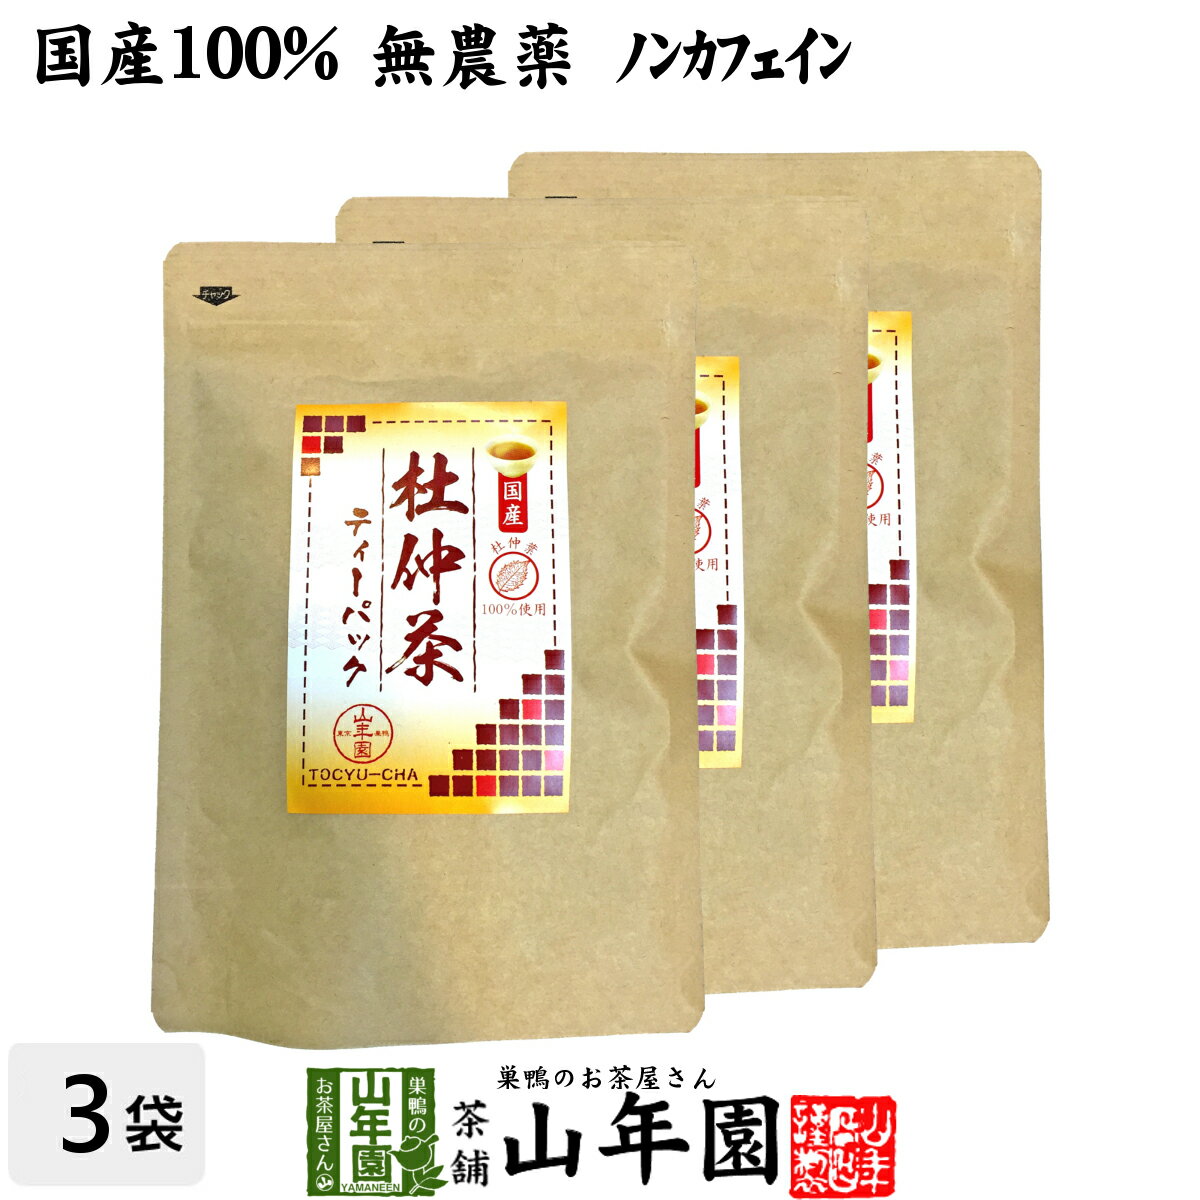 【長野県のお土産】お茶・紅茶